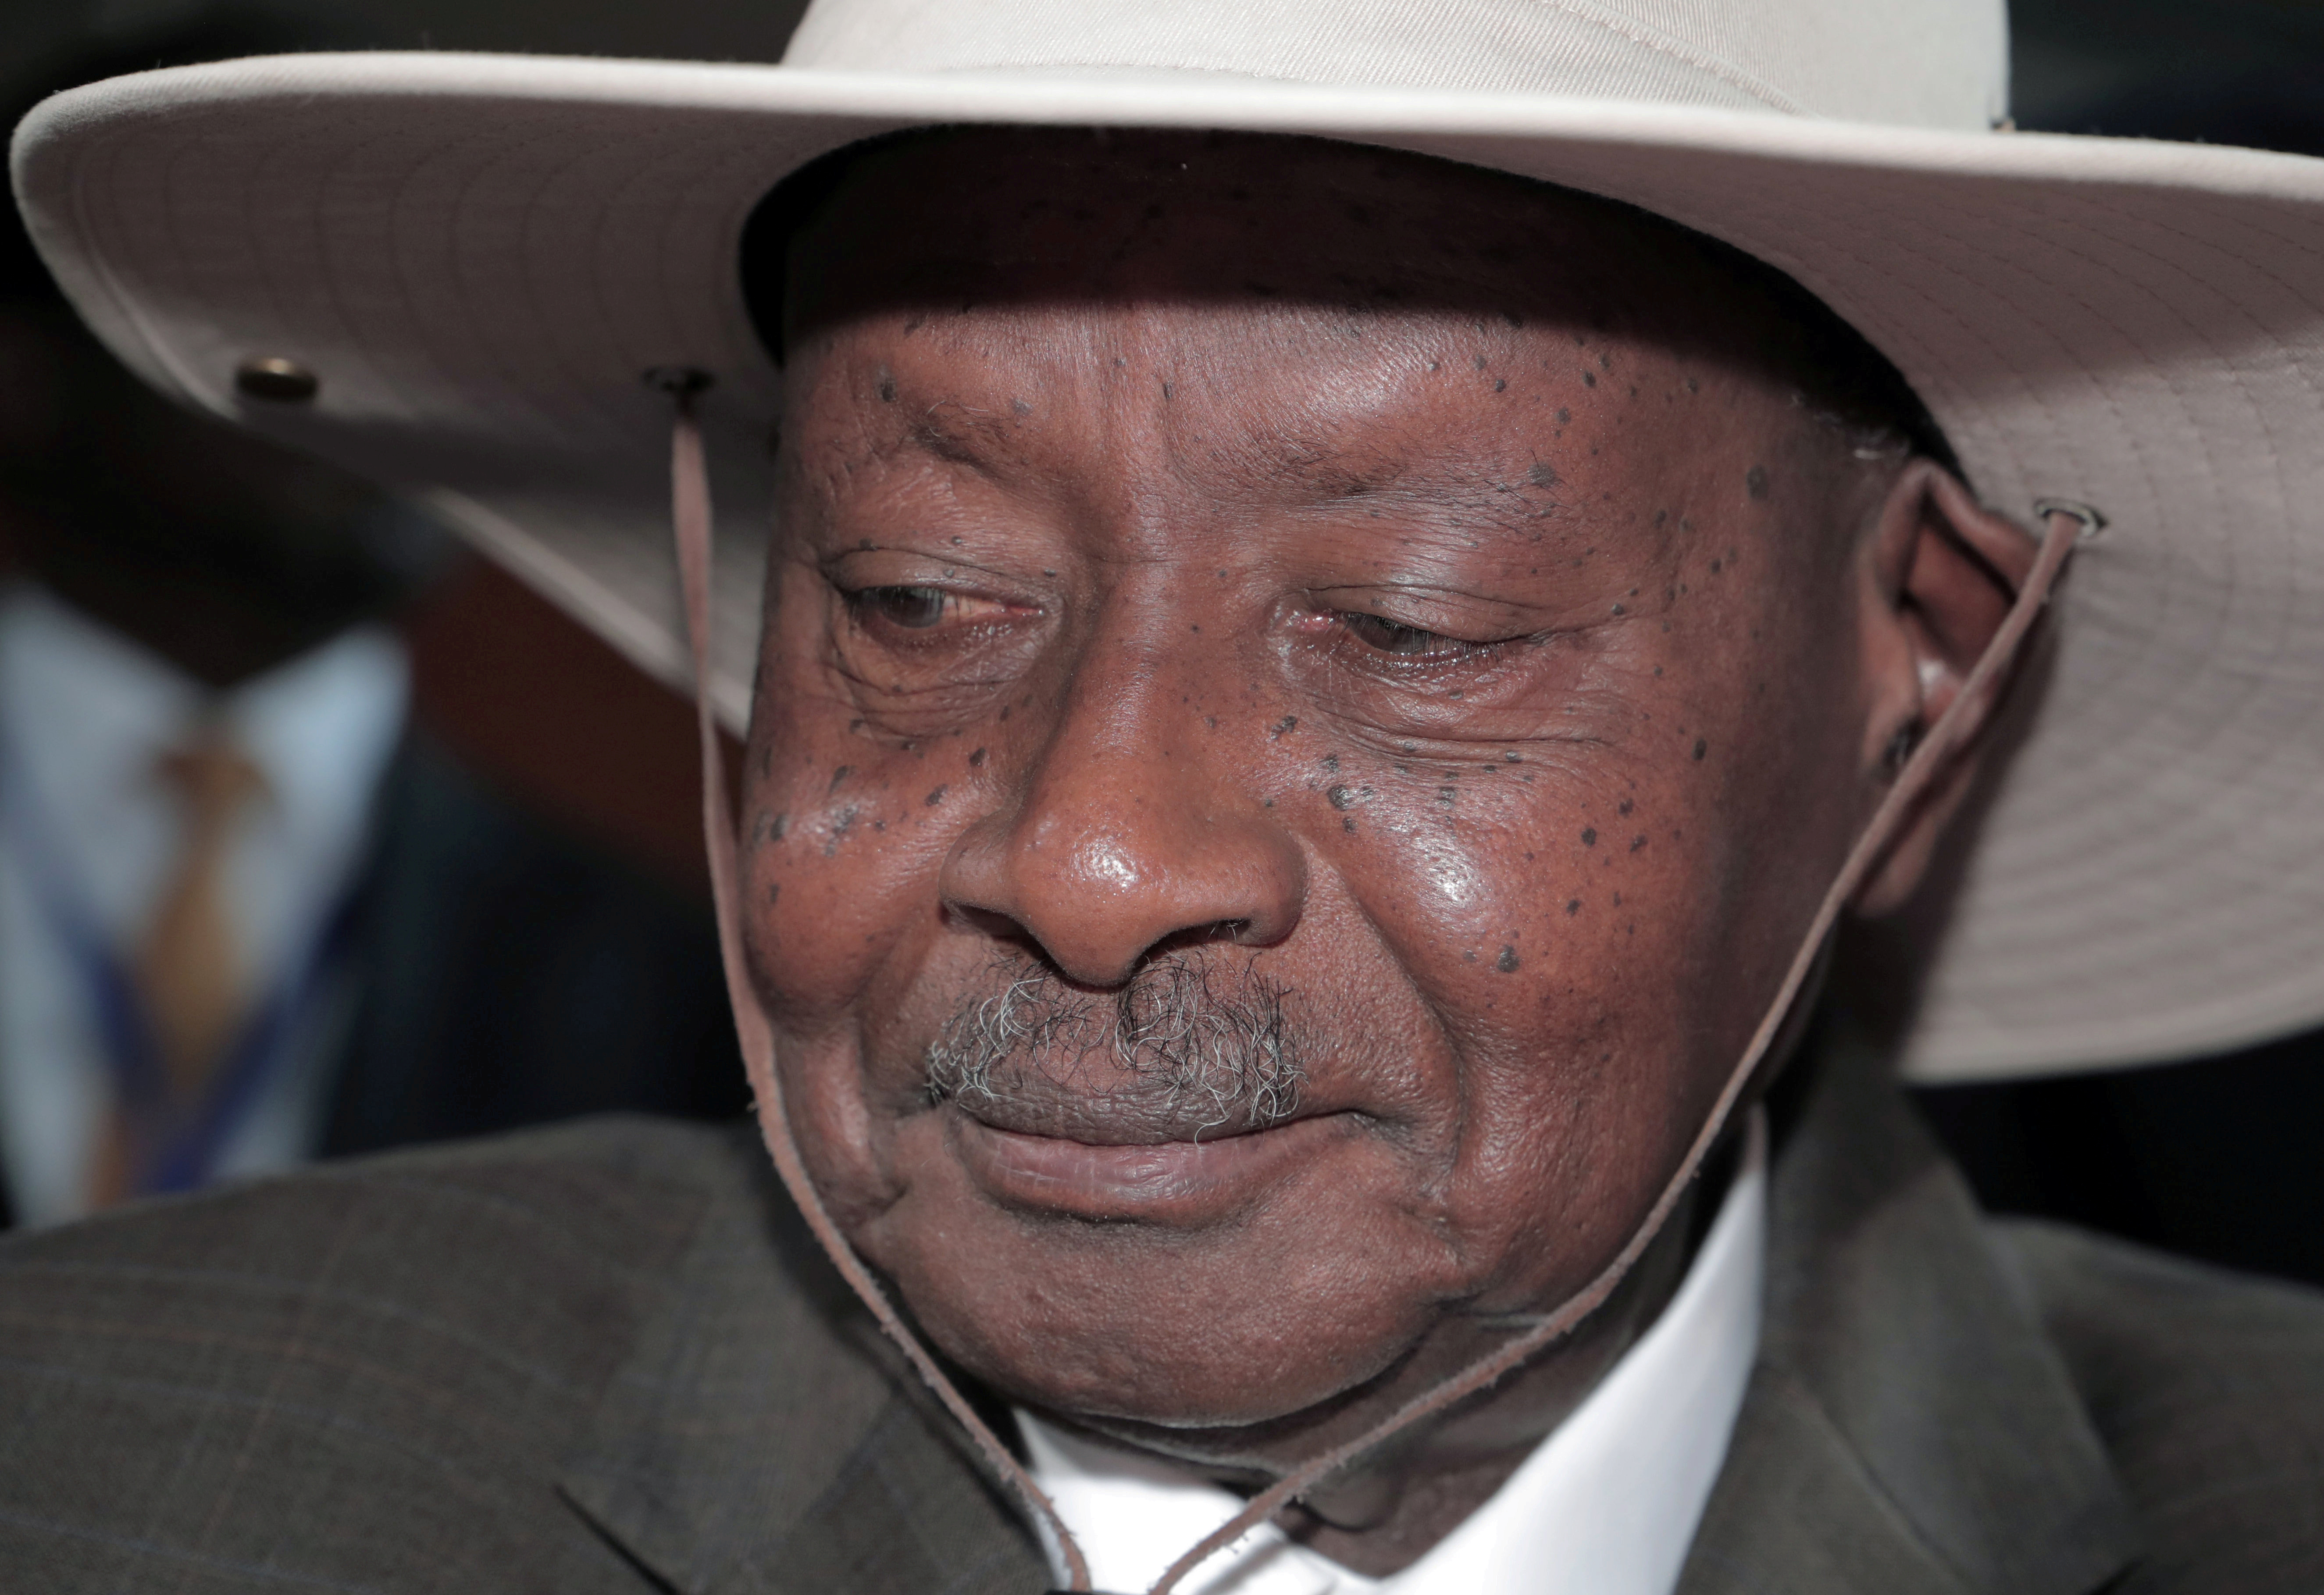 El presidente de Uganda, Yoweri Museveni, llega a la apertura de la 33ª Sesión Ordinaria de la Asamblea de Jefes de Estado y de Gobierno de la Unión Africana (UA) en Addis Abeba, Etiopía, el 9 de febrero de 2020 (REUTERS/Tiksa Negeri/File Photo)